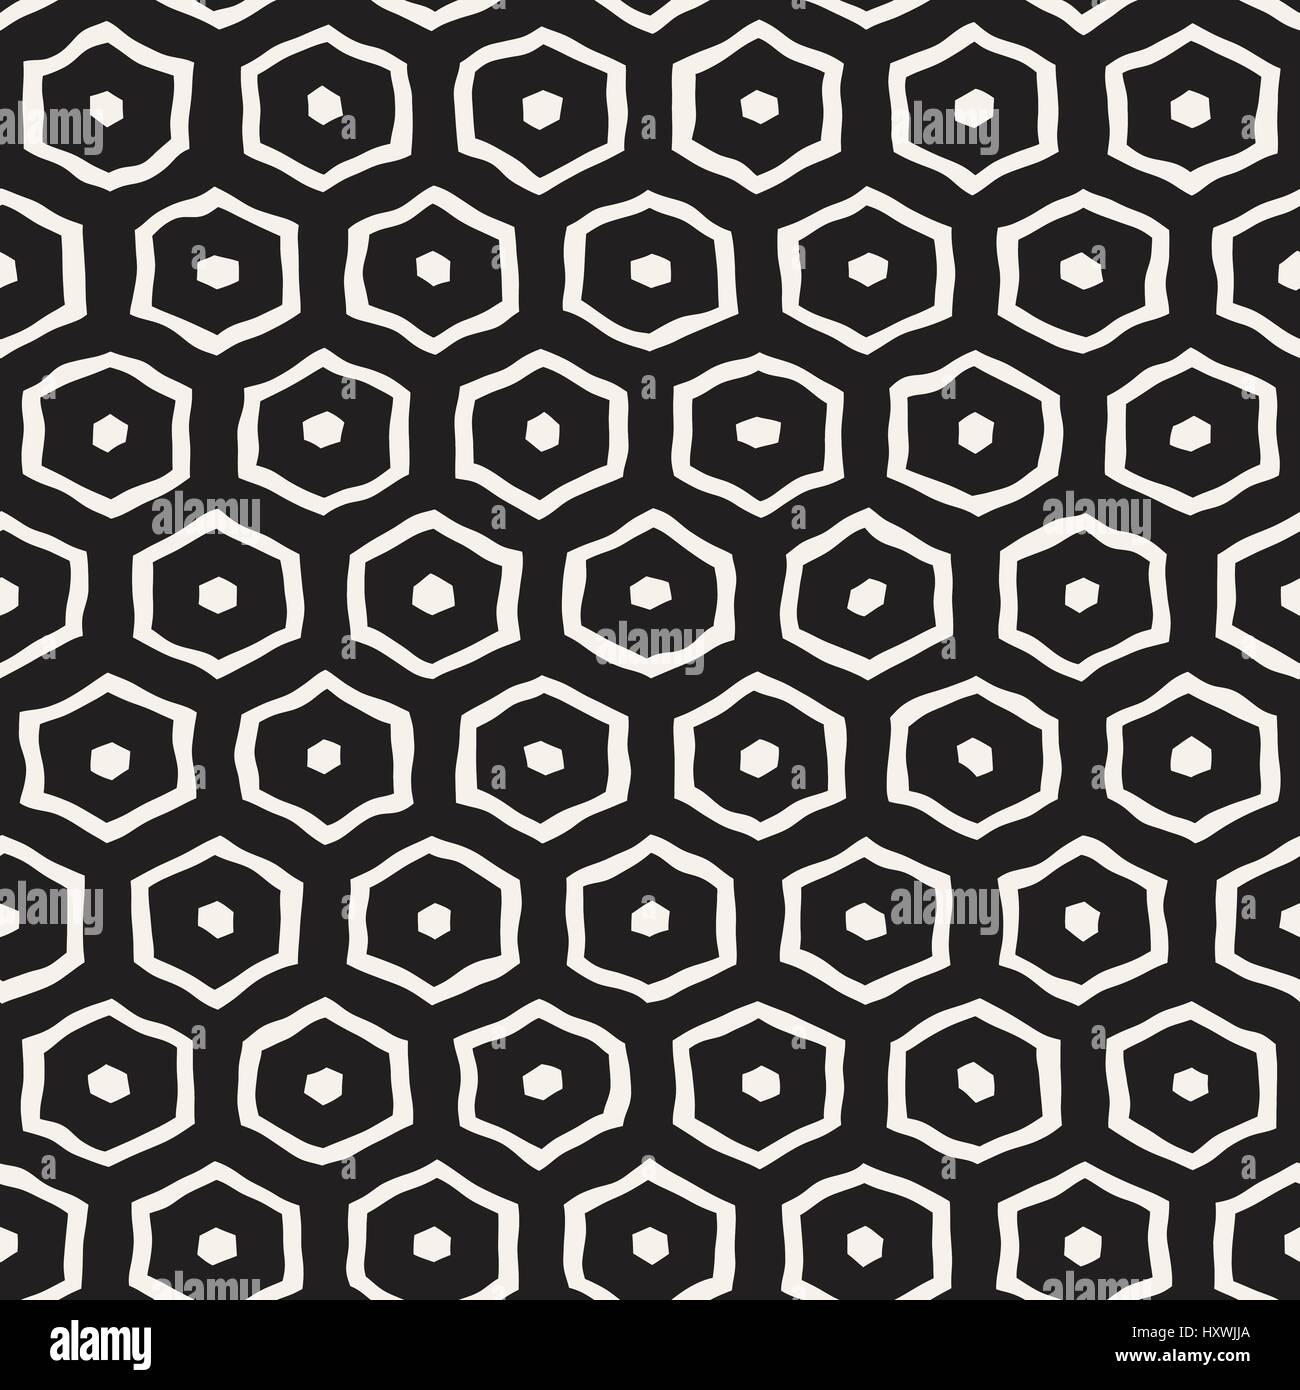 Un motif en noir et blanc avec treillis hexagonal. Monochrome créatif nid d'arrière-plan. à la main Illustration de Vecteur